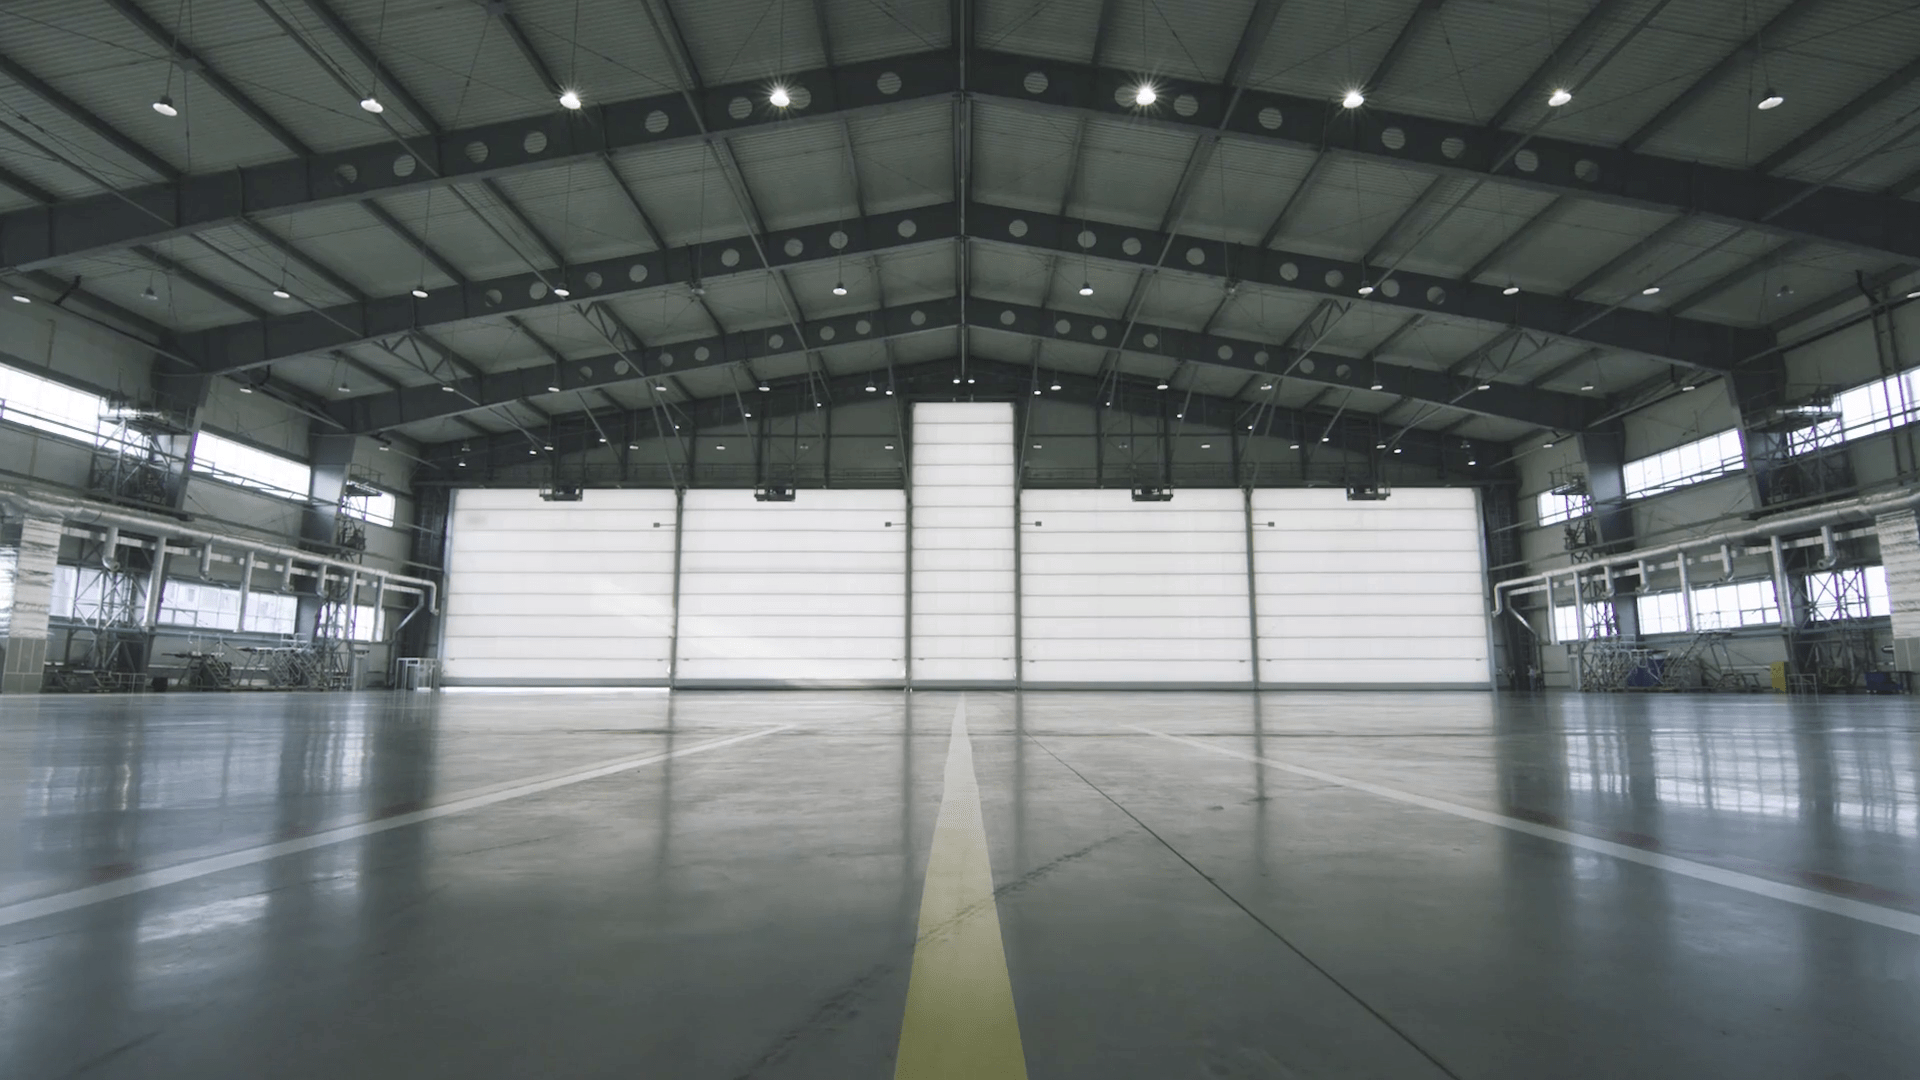 videoblocks-roller-shutter-door-and-concrete-floor-inside-factory-building-for-industrial-background-airplane-in-front-of-half-opened-door-to-hangar-the-open-door-of-the-hangar-mechanic-open